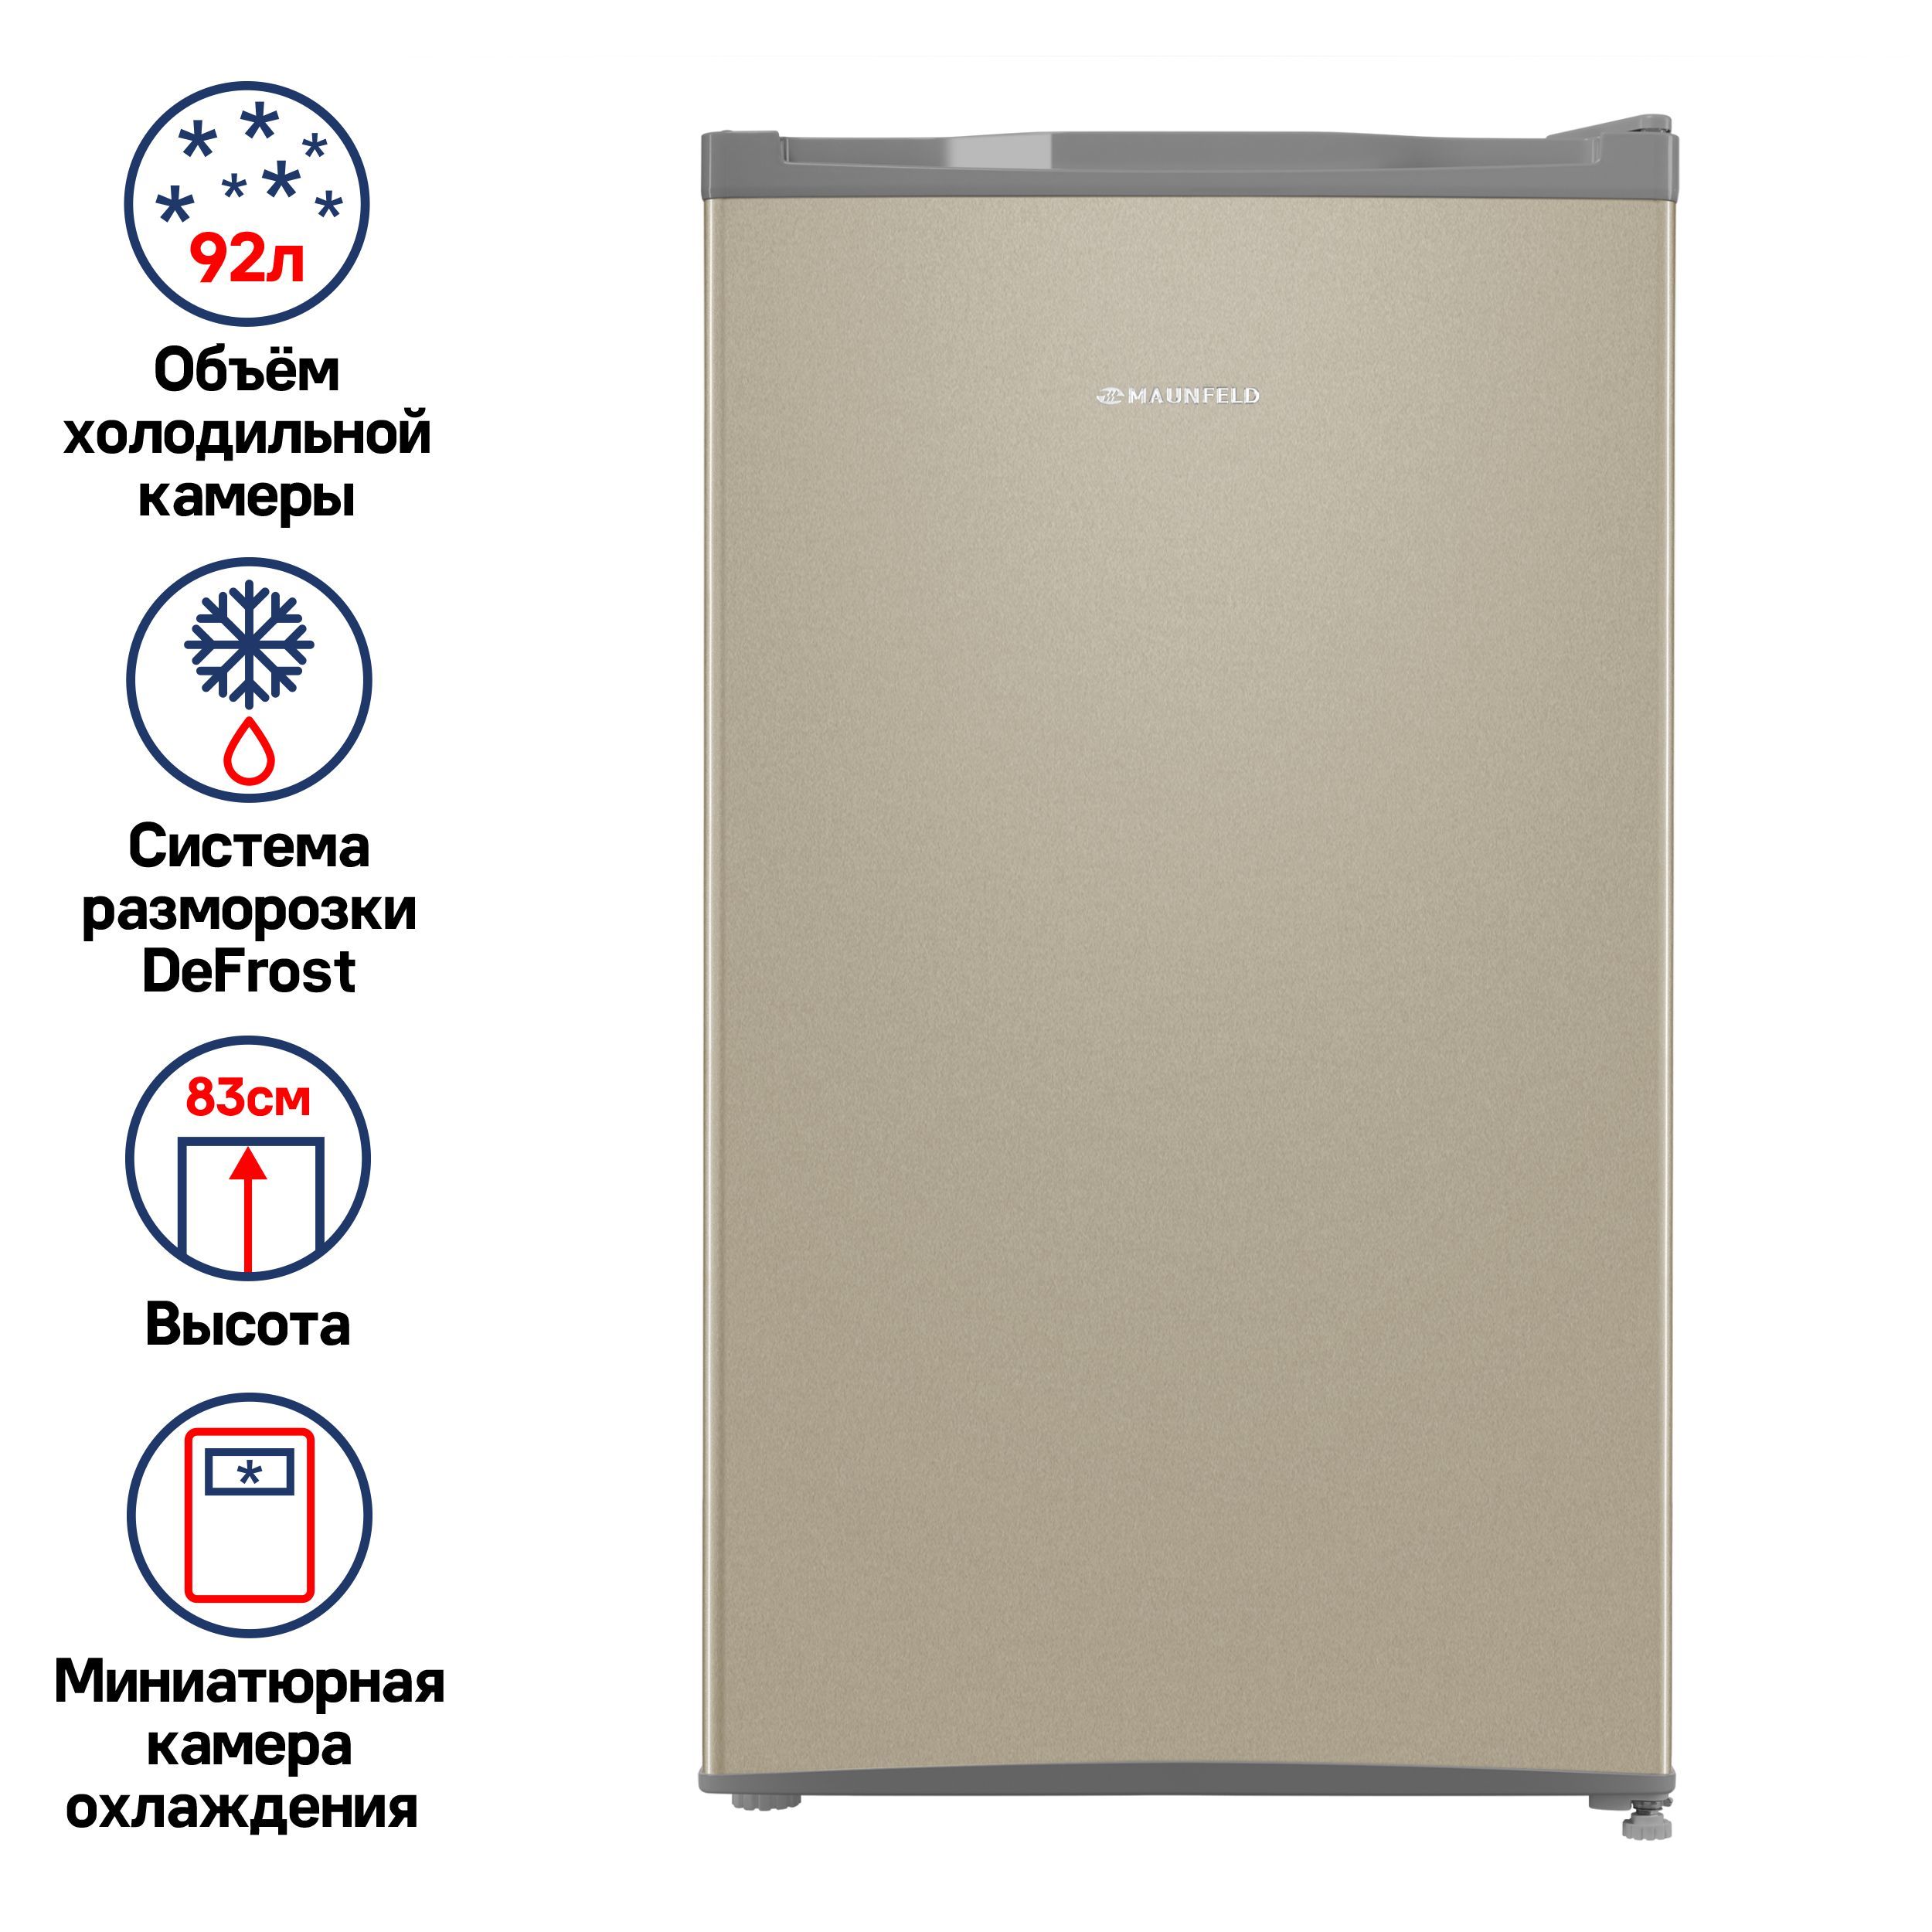 Мини-холодильникMAUNFELDMFF83GD,однокамерный,маленькийкомпактныйхолодильник,92л,83см,40дБ,золотой